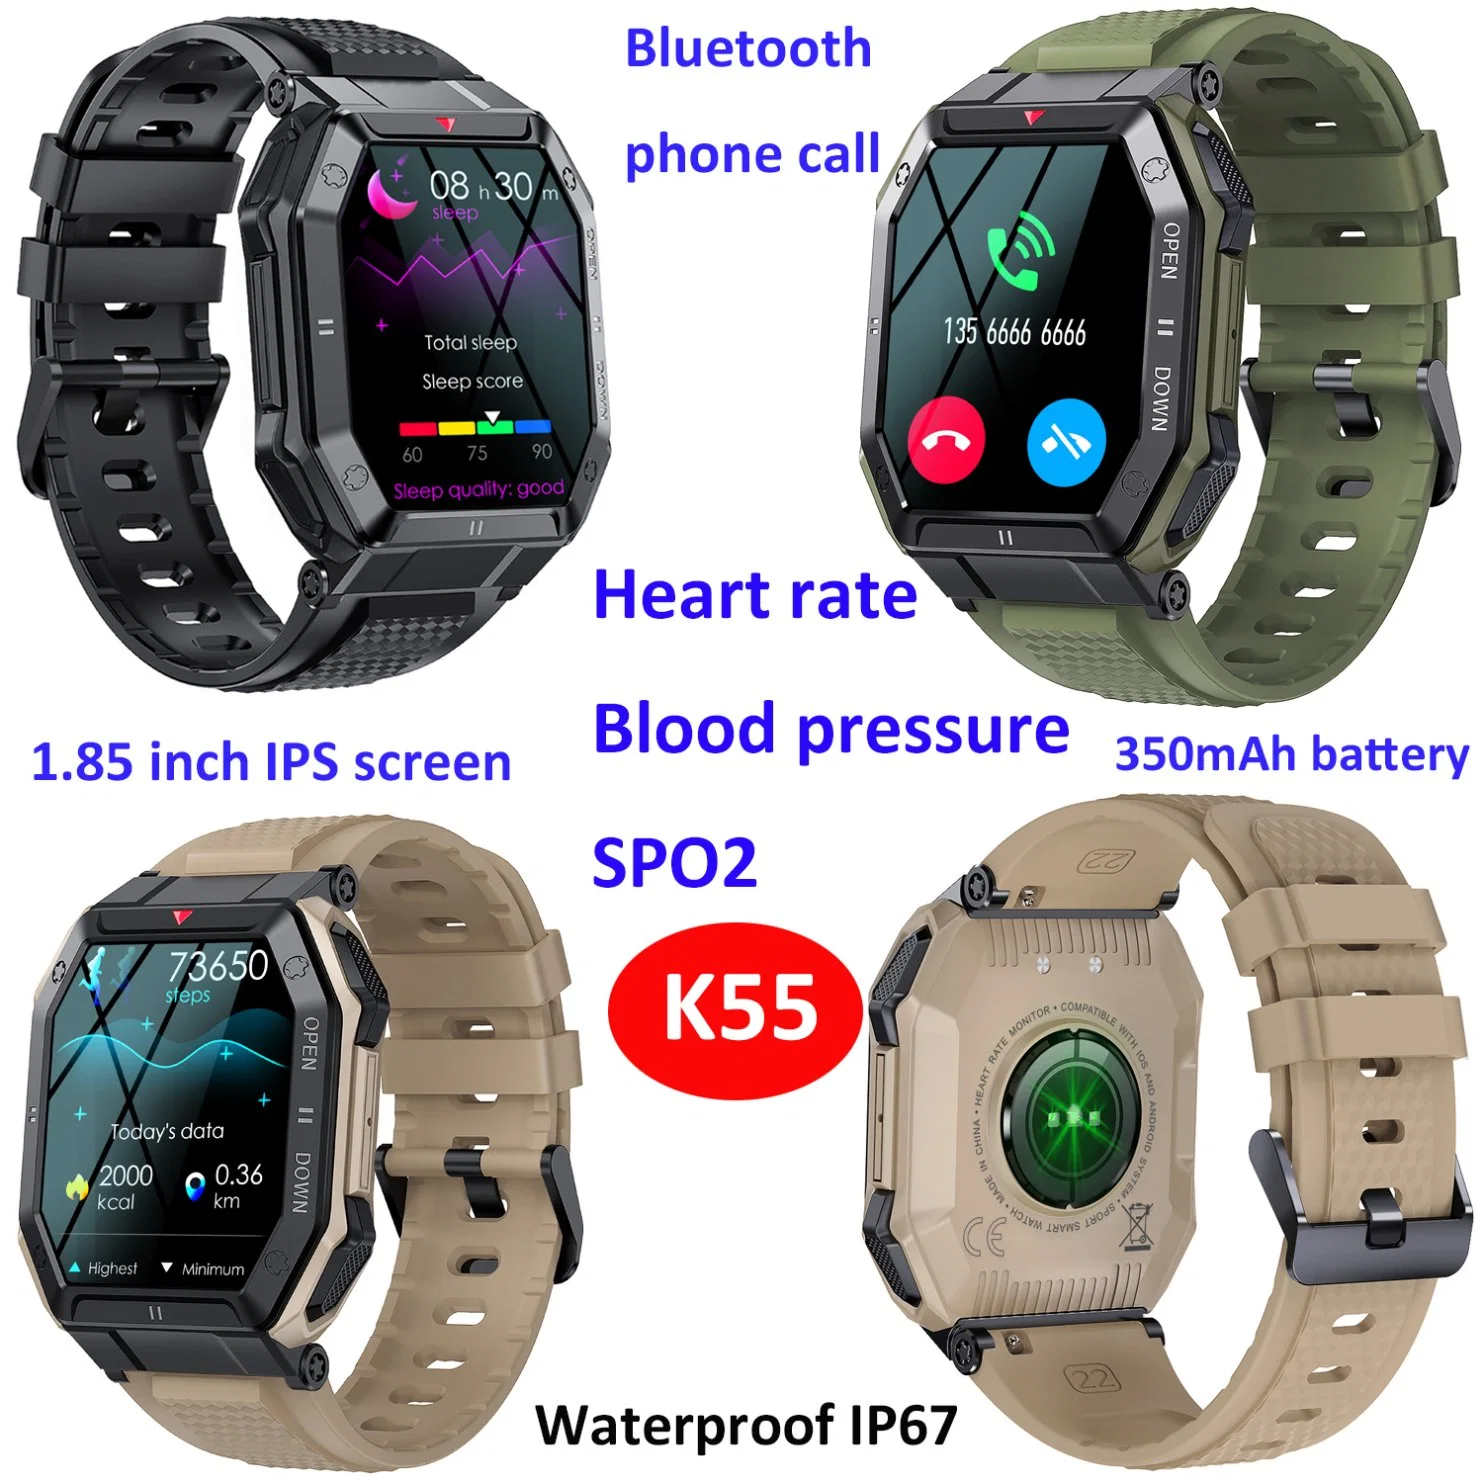 Usine chinoise de montres intelligentes pour hommes, compatibles avec IOS et Android, avec suivi de la fréquence cardiaque et de la tension artérielle, bracelet Bluetooth pour téléphone portable de sport K55.